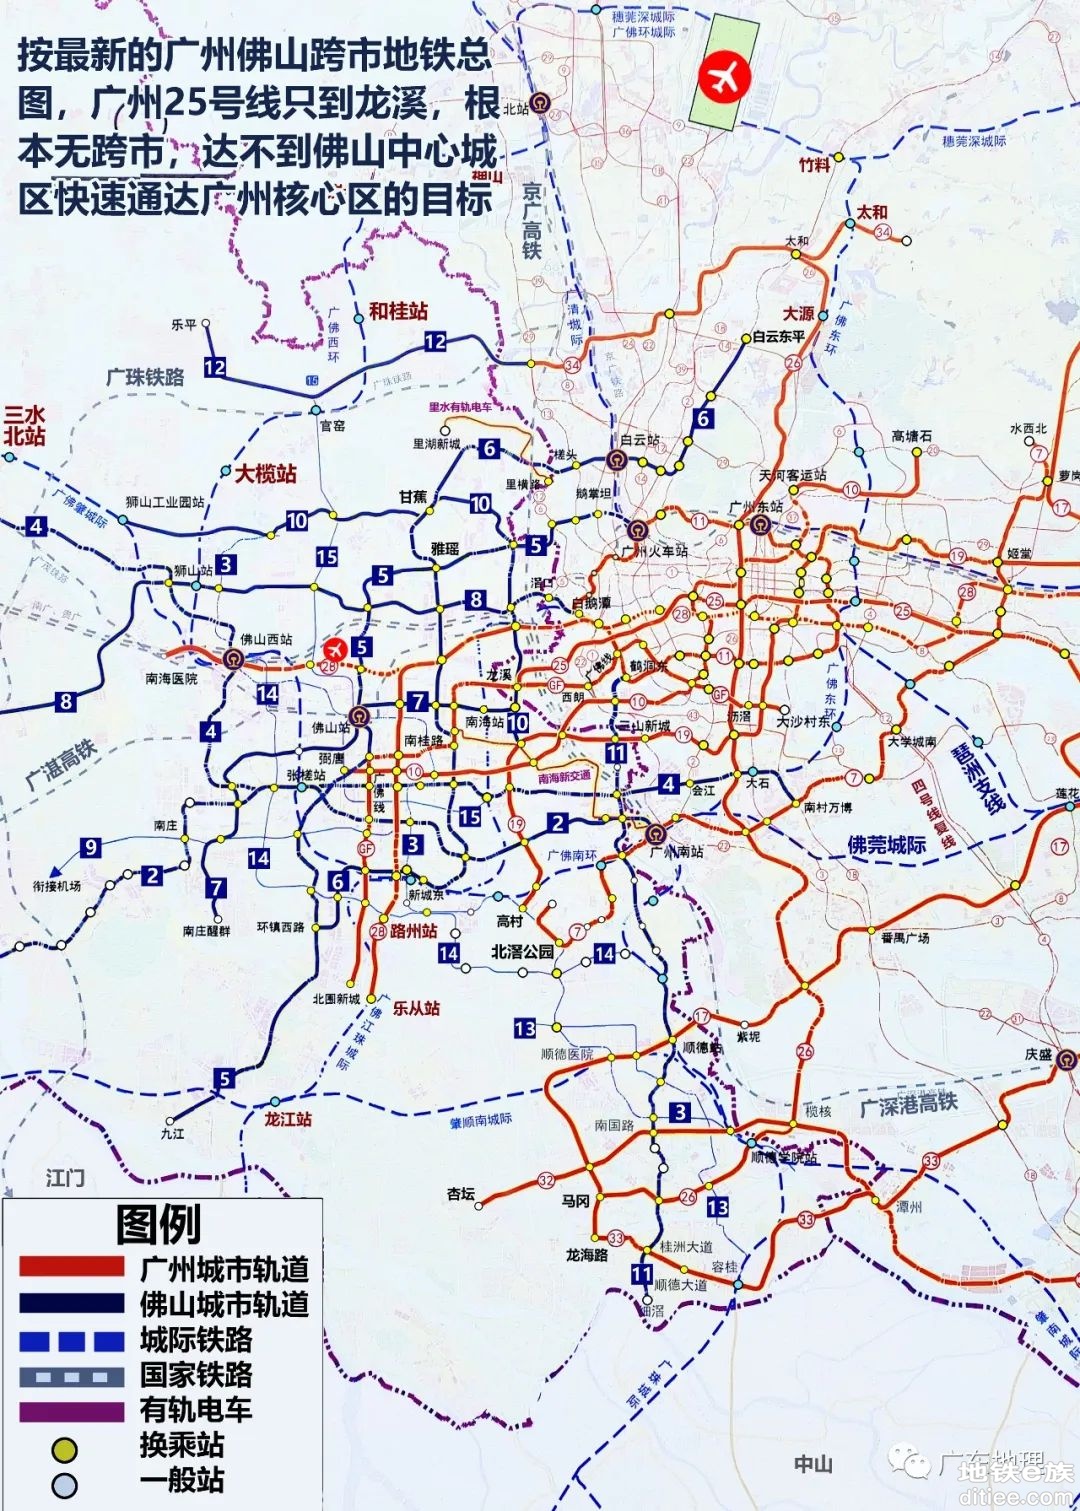 三条联动发展轴促进广佛全域同城，争取广州26号线延至顺德